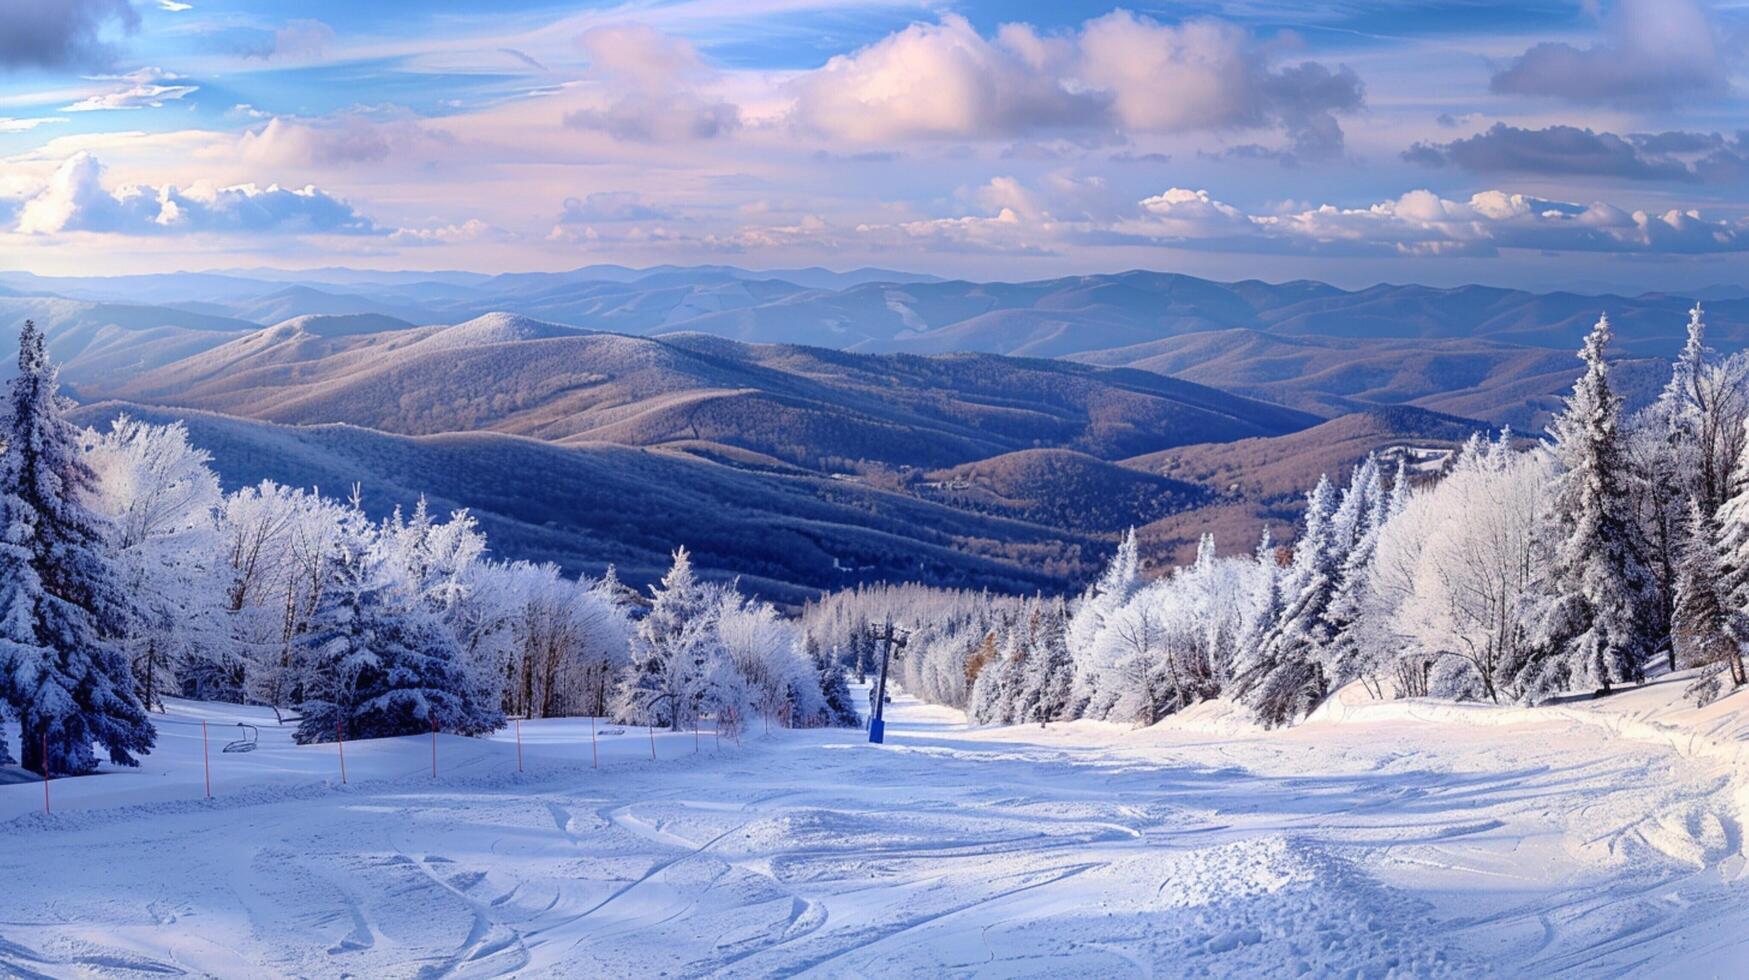 schön Winter Natur Landschaft tolle Berg foto